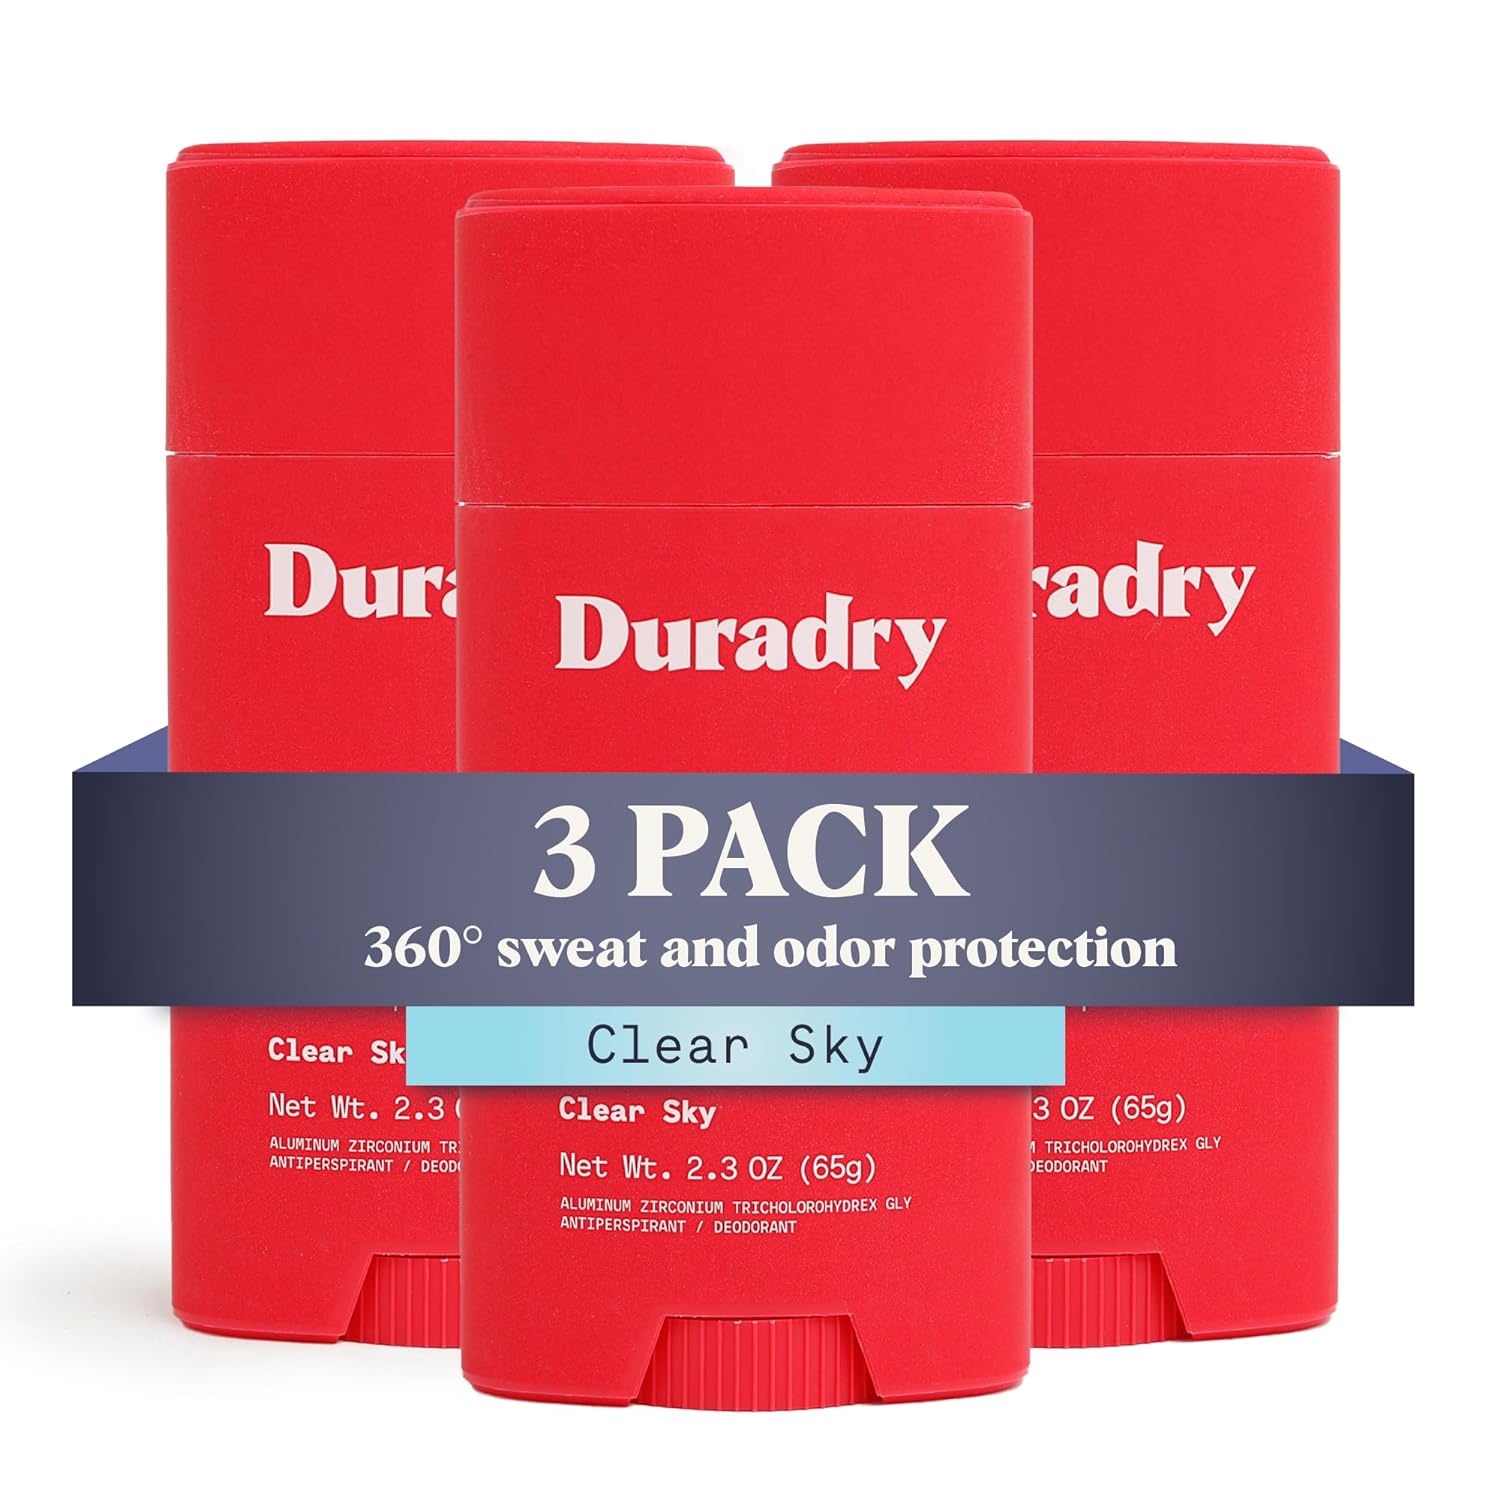 Duradry AM Deodorant & Antiperspiran…